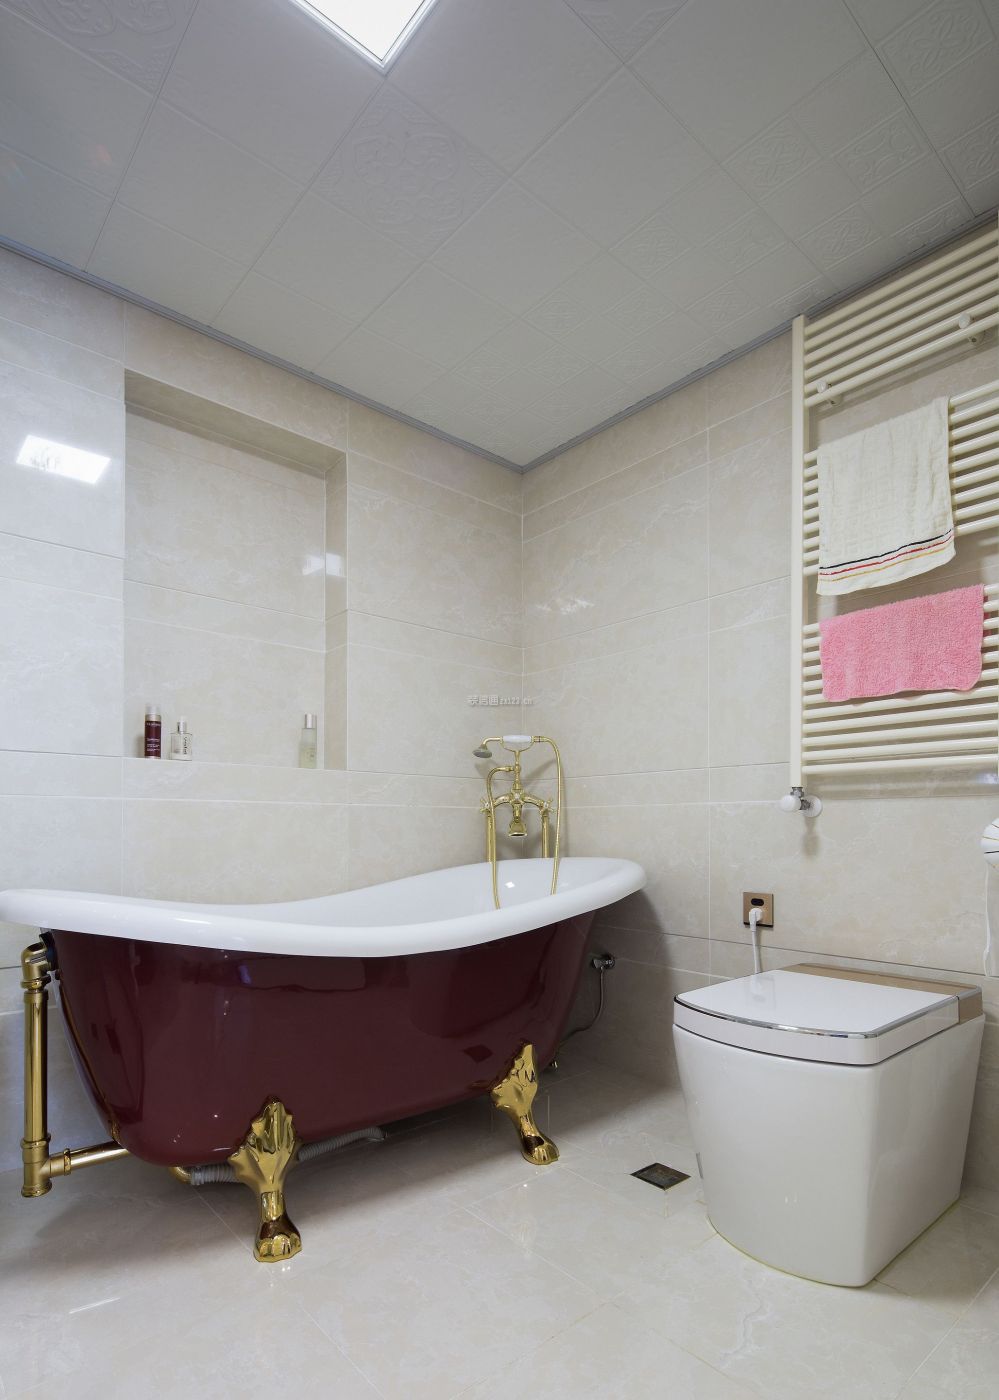 卫生间浴缸设计图片 卫生间浴缸效果图